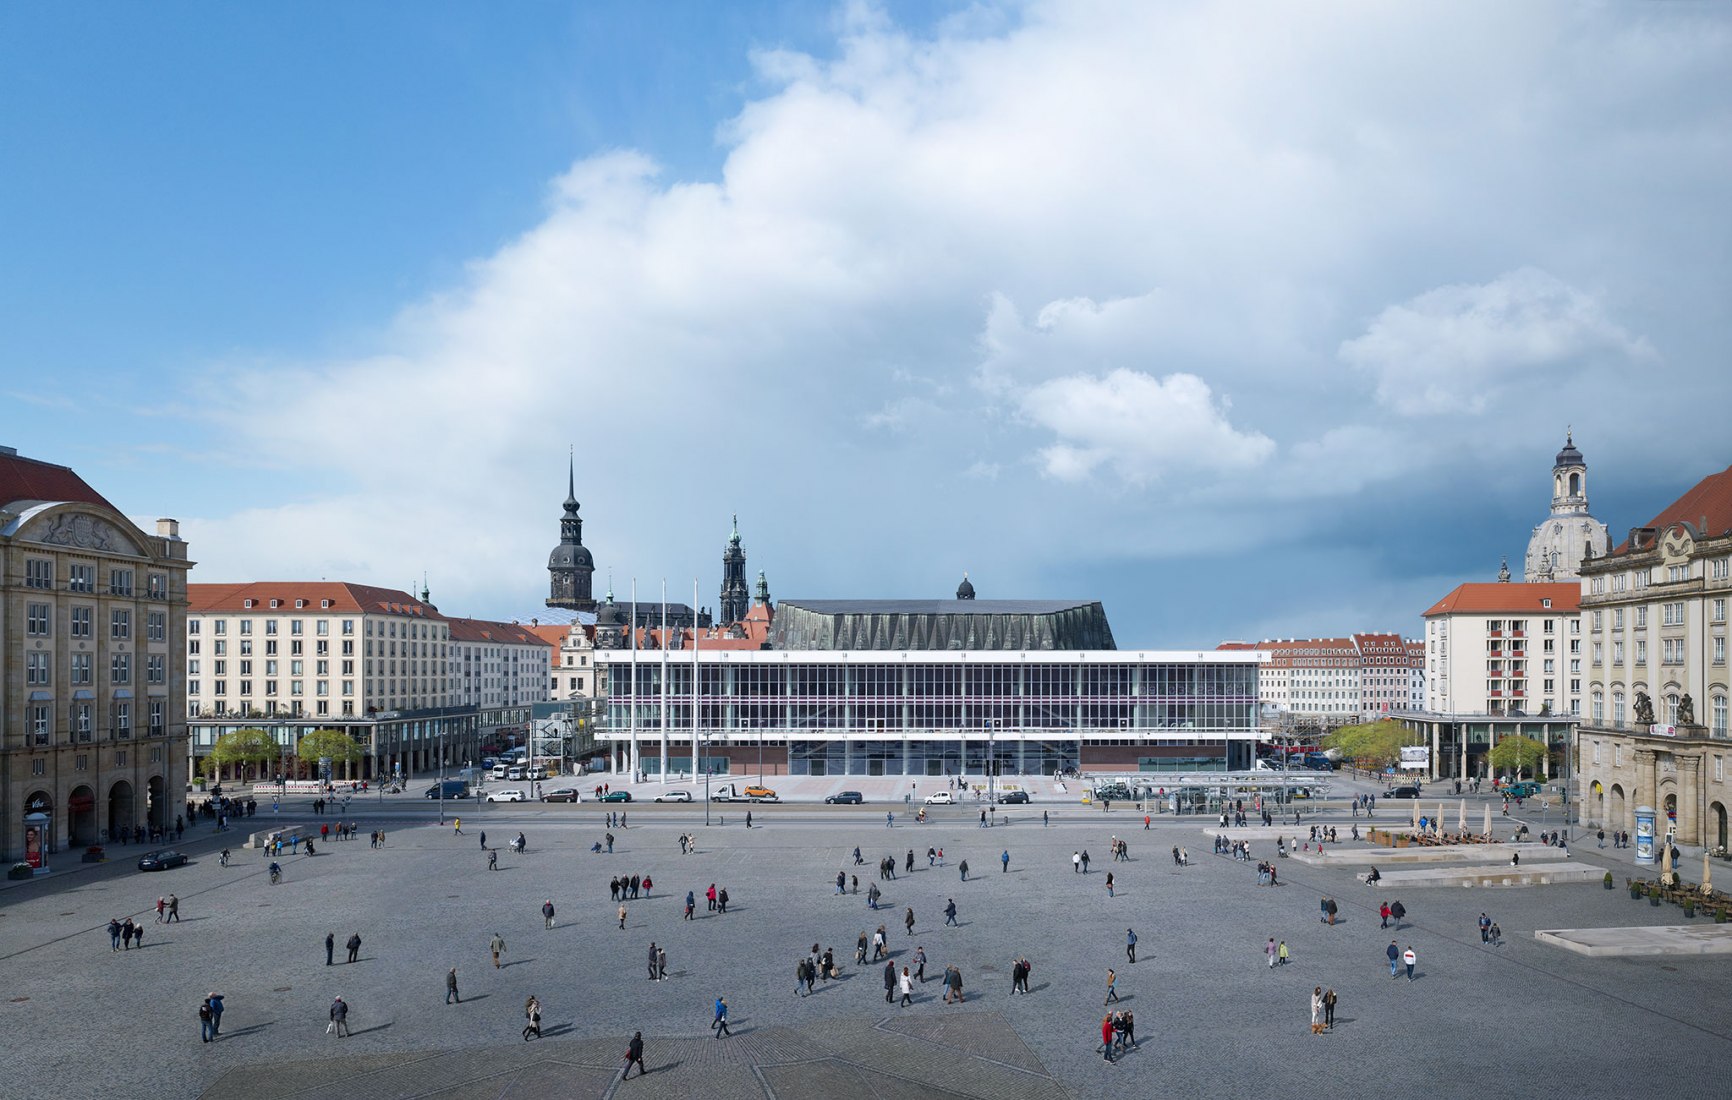 Kulturpalast Dresden by gmp Architekten. Photograph by Christian Gahl / gmp Architekten